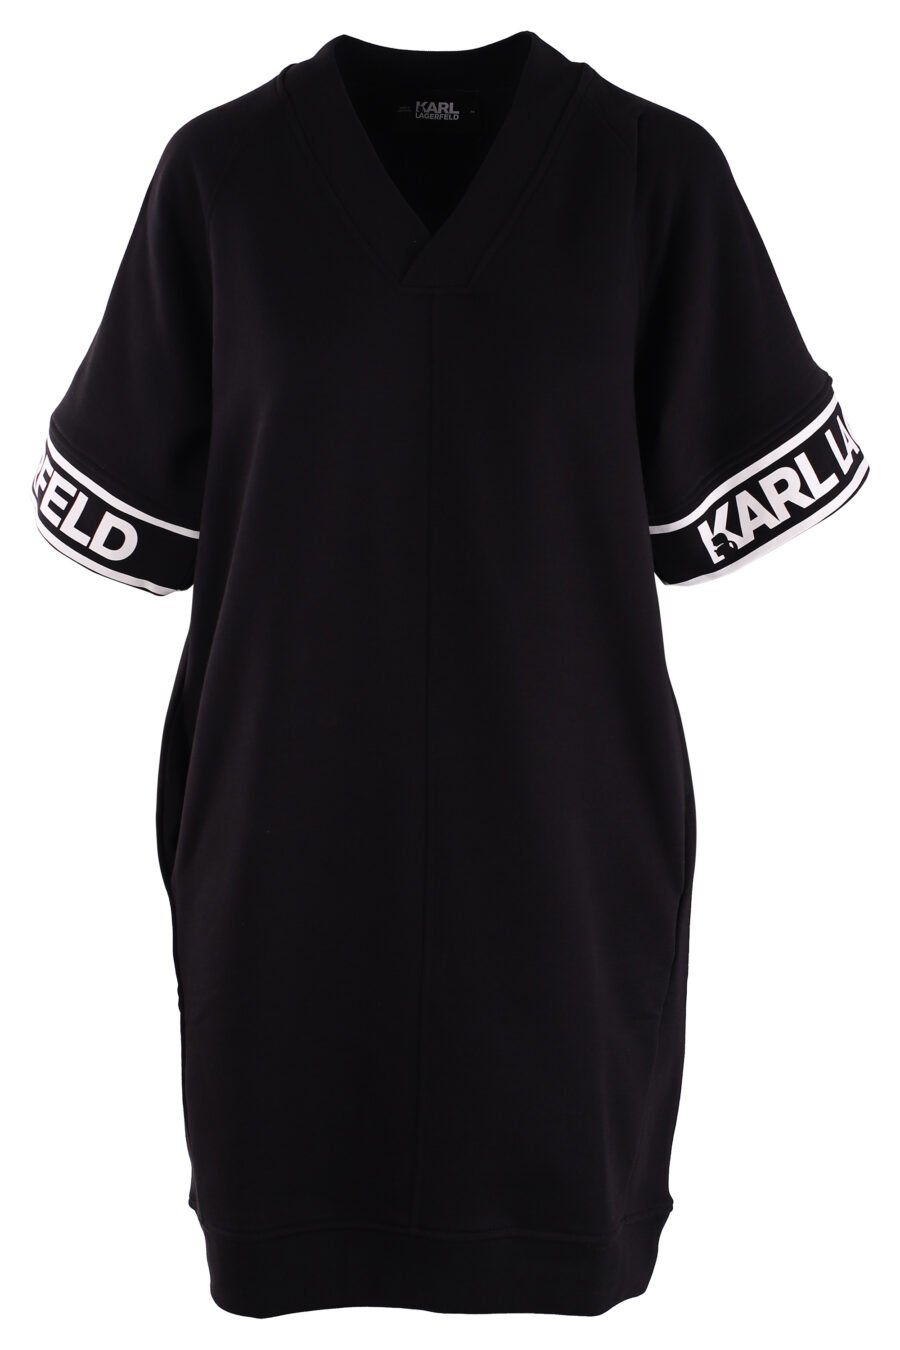 Schwarzes Kleid mit Logo an den Ärmeln - IMG 3047